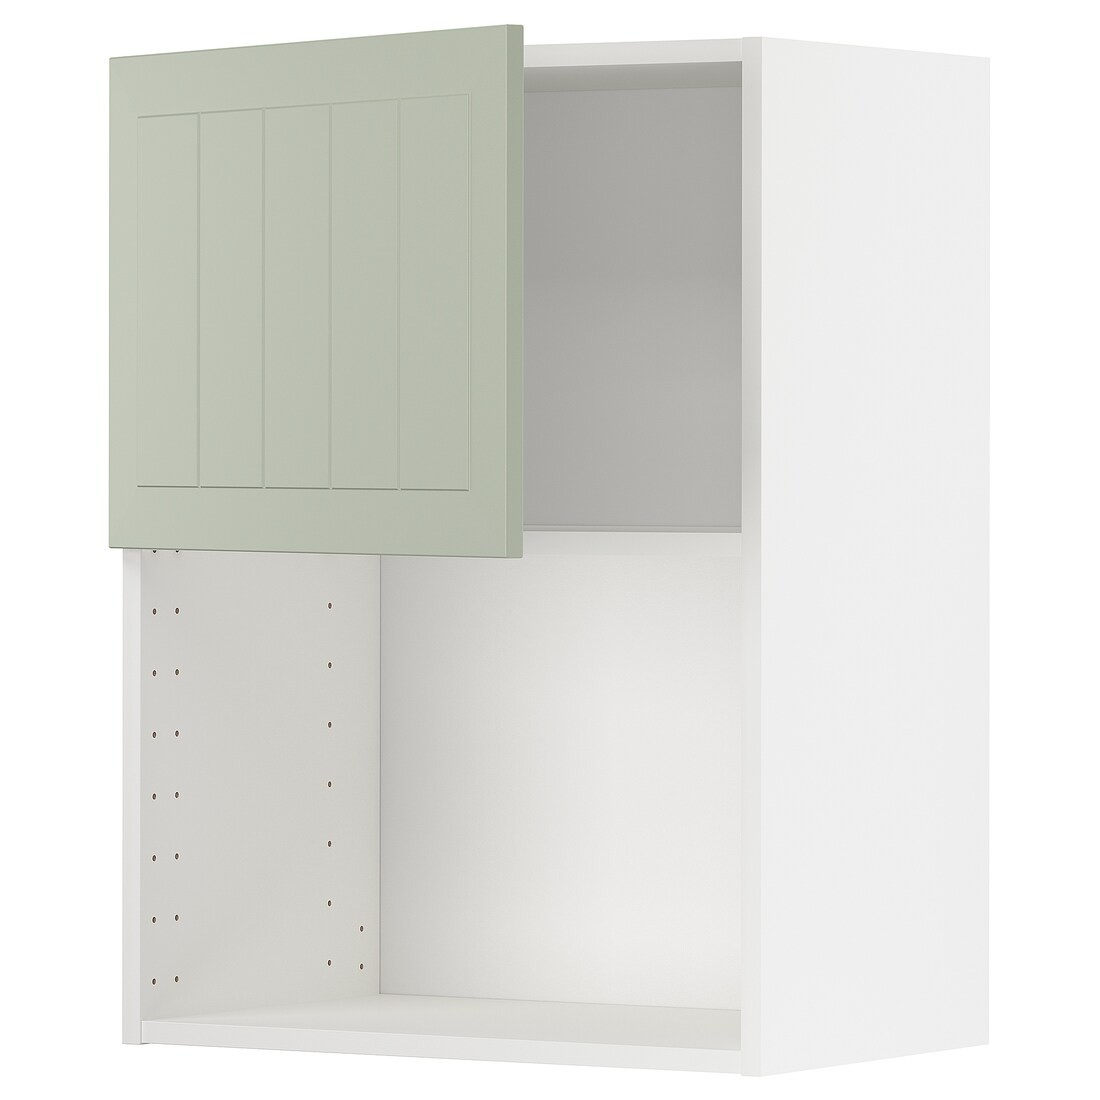 IKEA METOD МЕТОД Навесной шкаф для СВЧ-печи, белый / Stensund светло-зеленый, 60x80 см 49486670 | 494.866.70